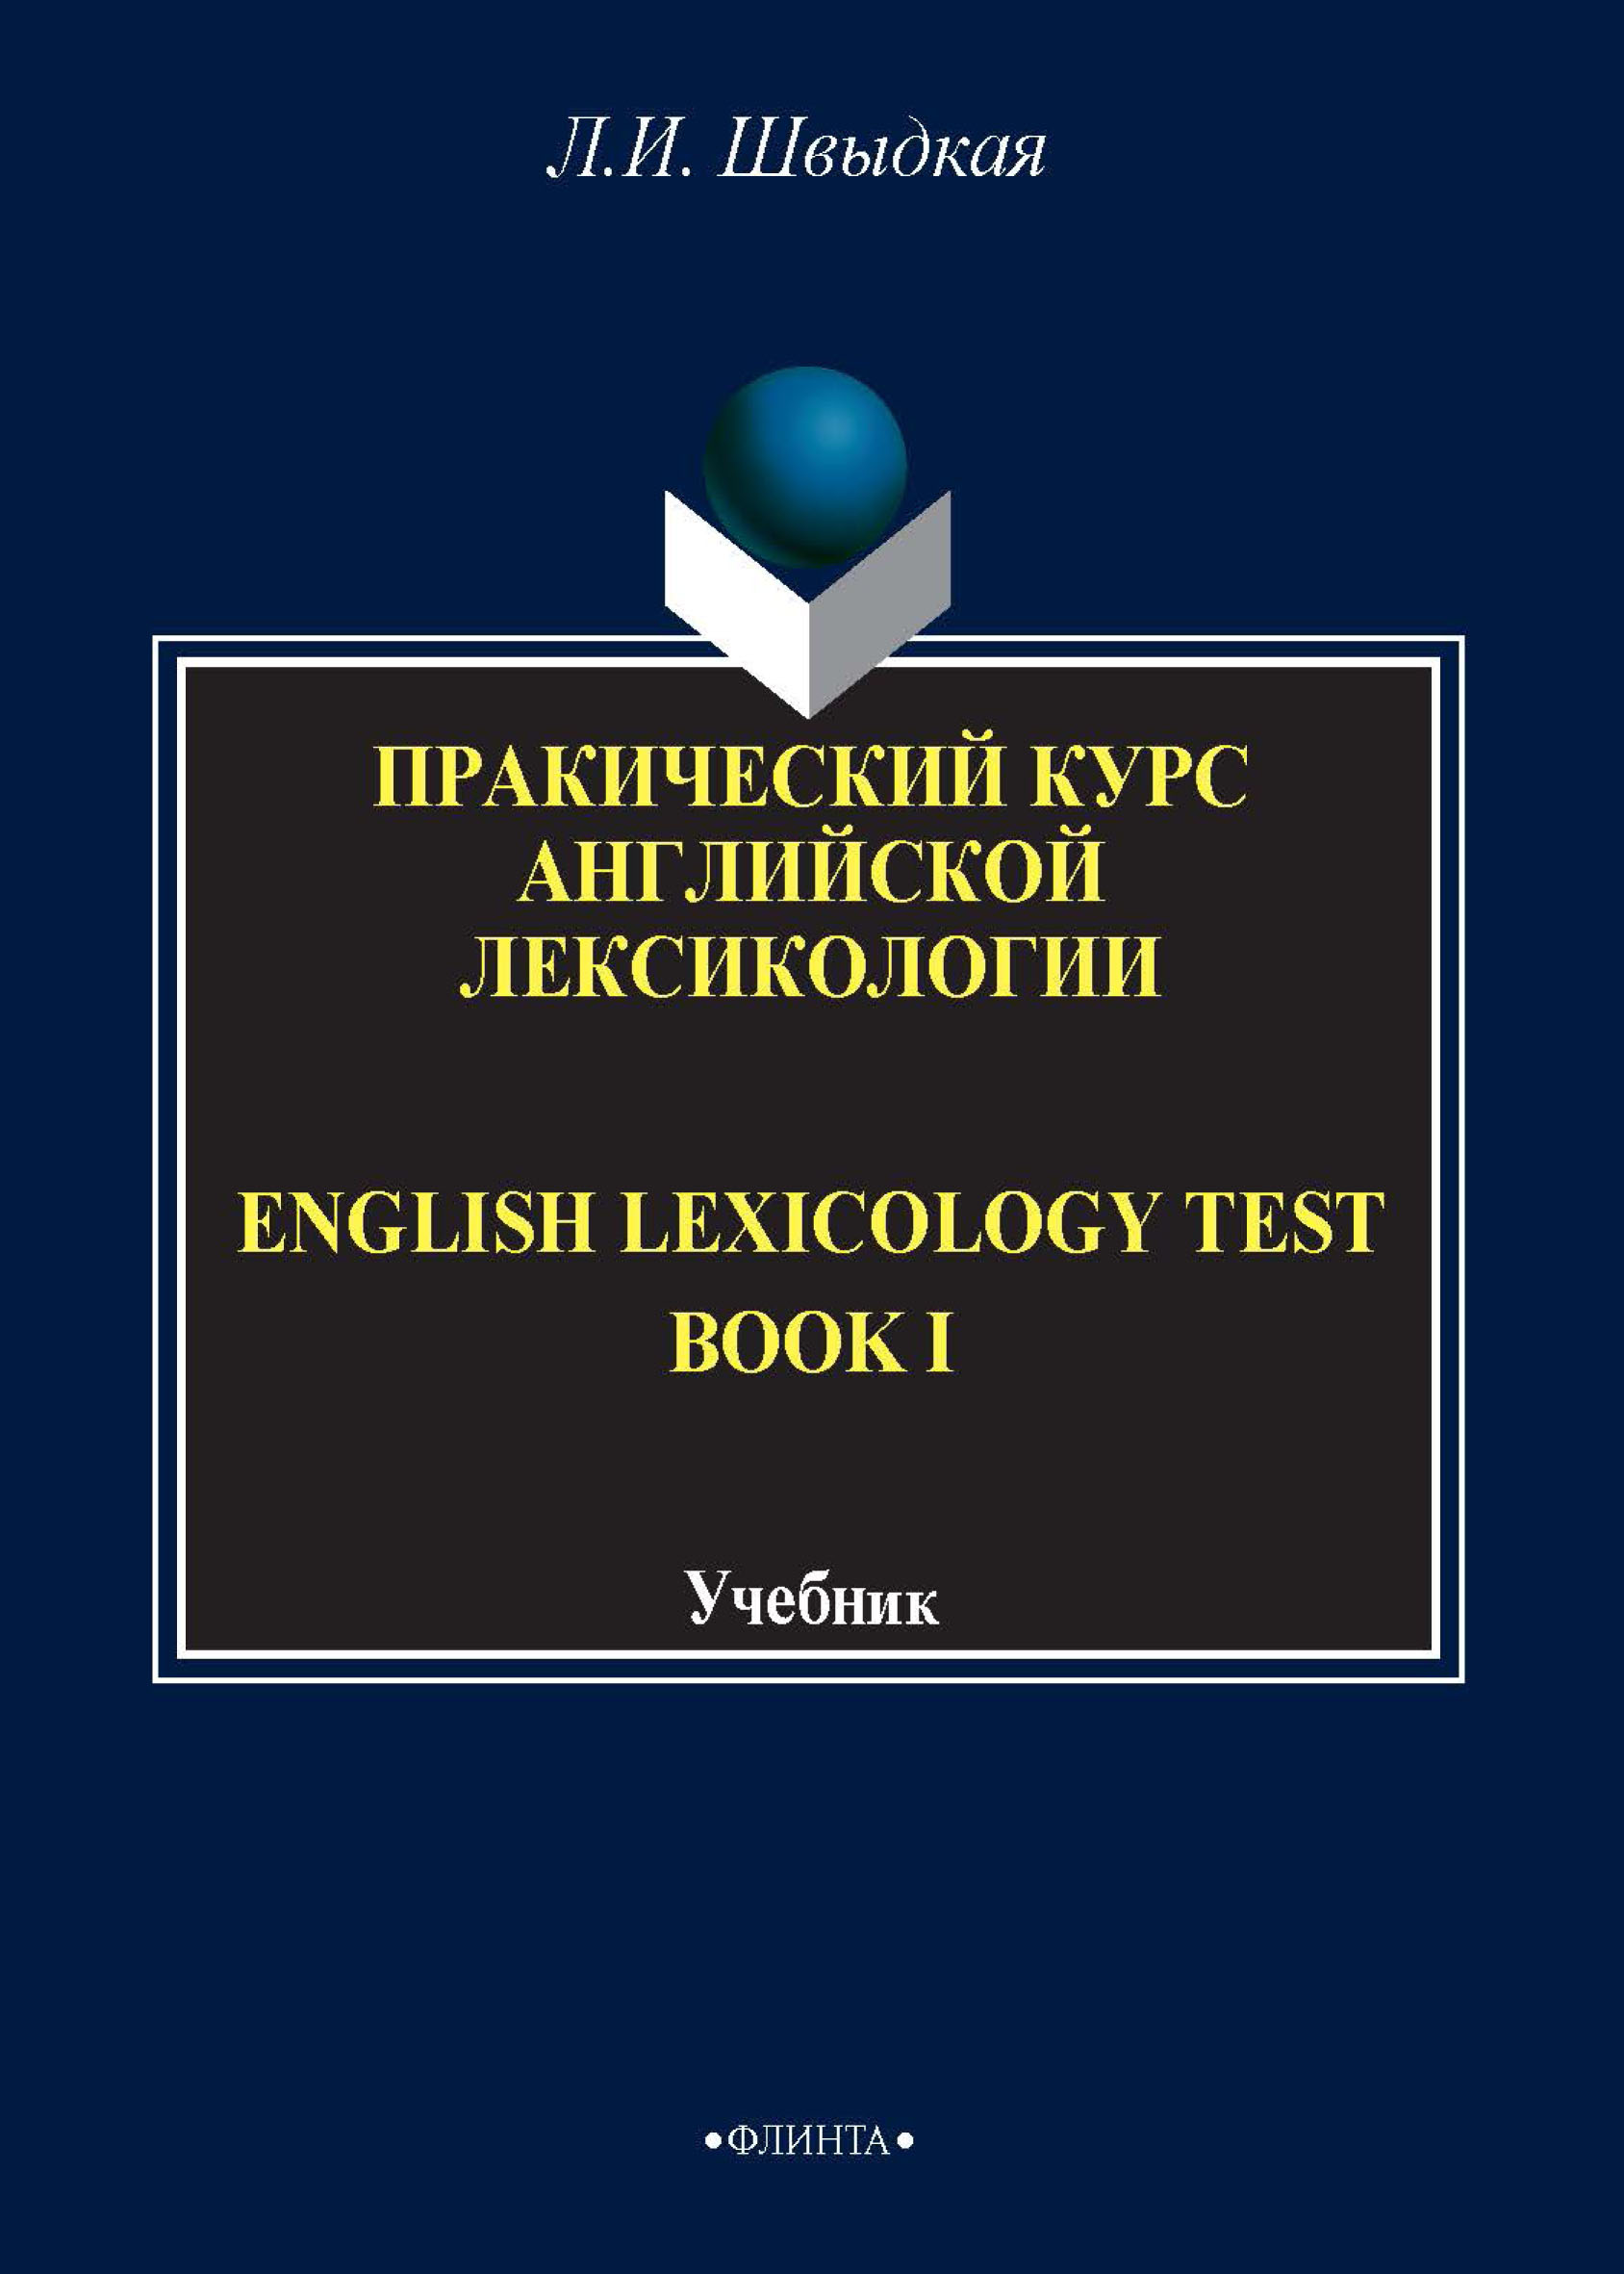 English Lexicology Test Book.Практический курс английской лексикологии. Часть I